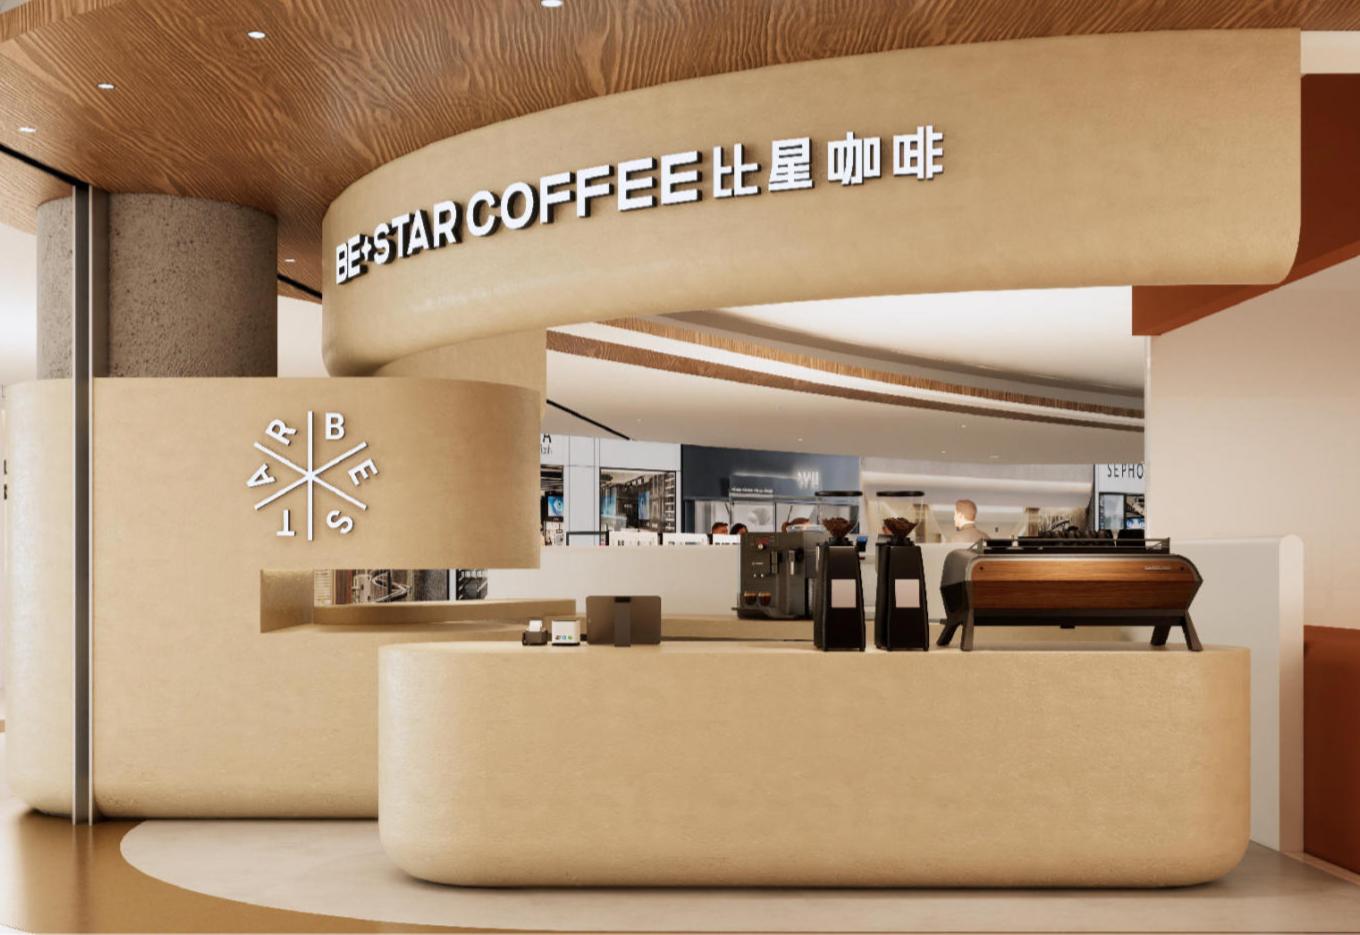 精品咖啡品牌「比星咖啡」完成数千万元A轮融资-艾格农业投融资平台